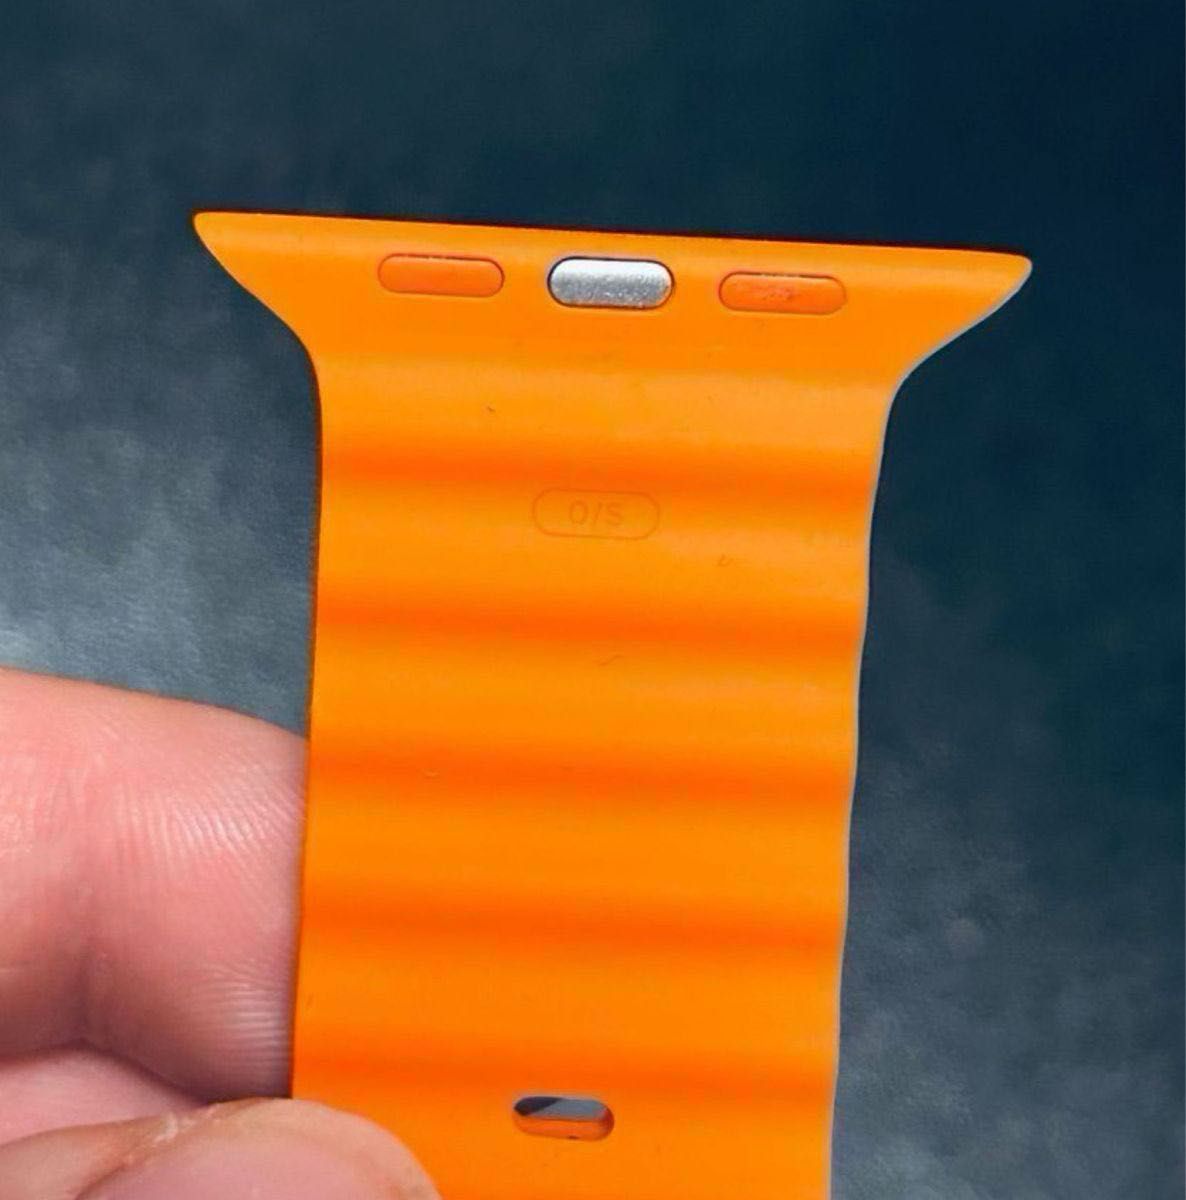 【純正】AppleWatch交換用バンド 49mmケース用 オレンジオーシャンバンド Apple純正 45mm/44mm対応 橙色